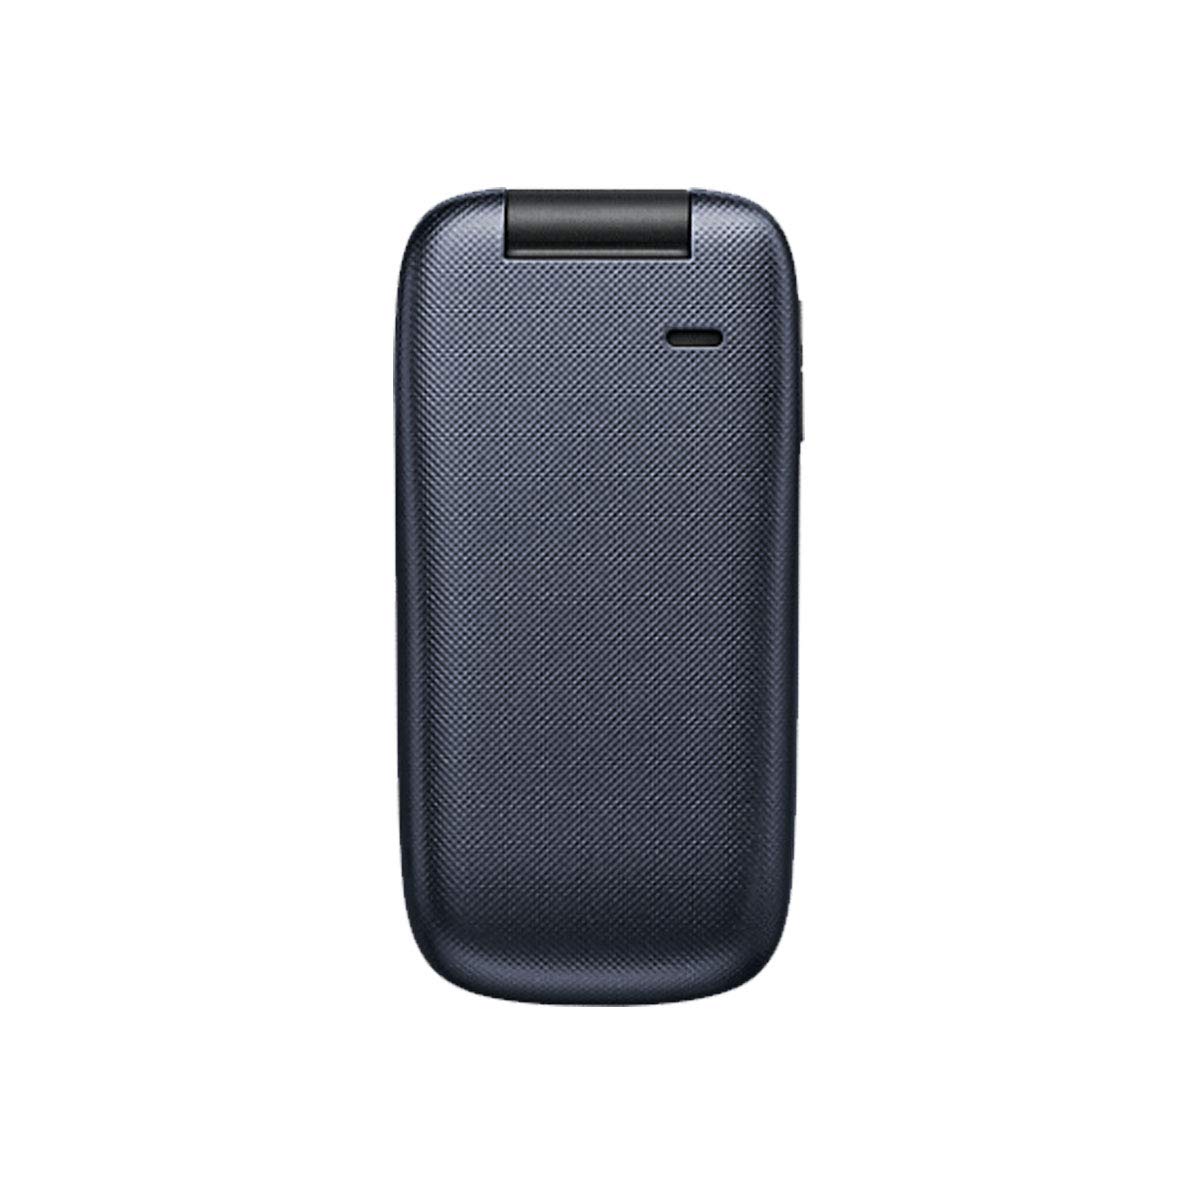 Kyocera Cadence LTE S2720 Blue (Verizon Wireless Prepaid)